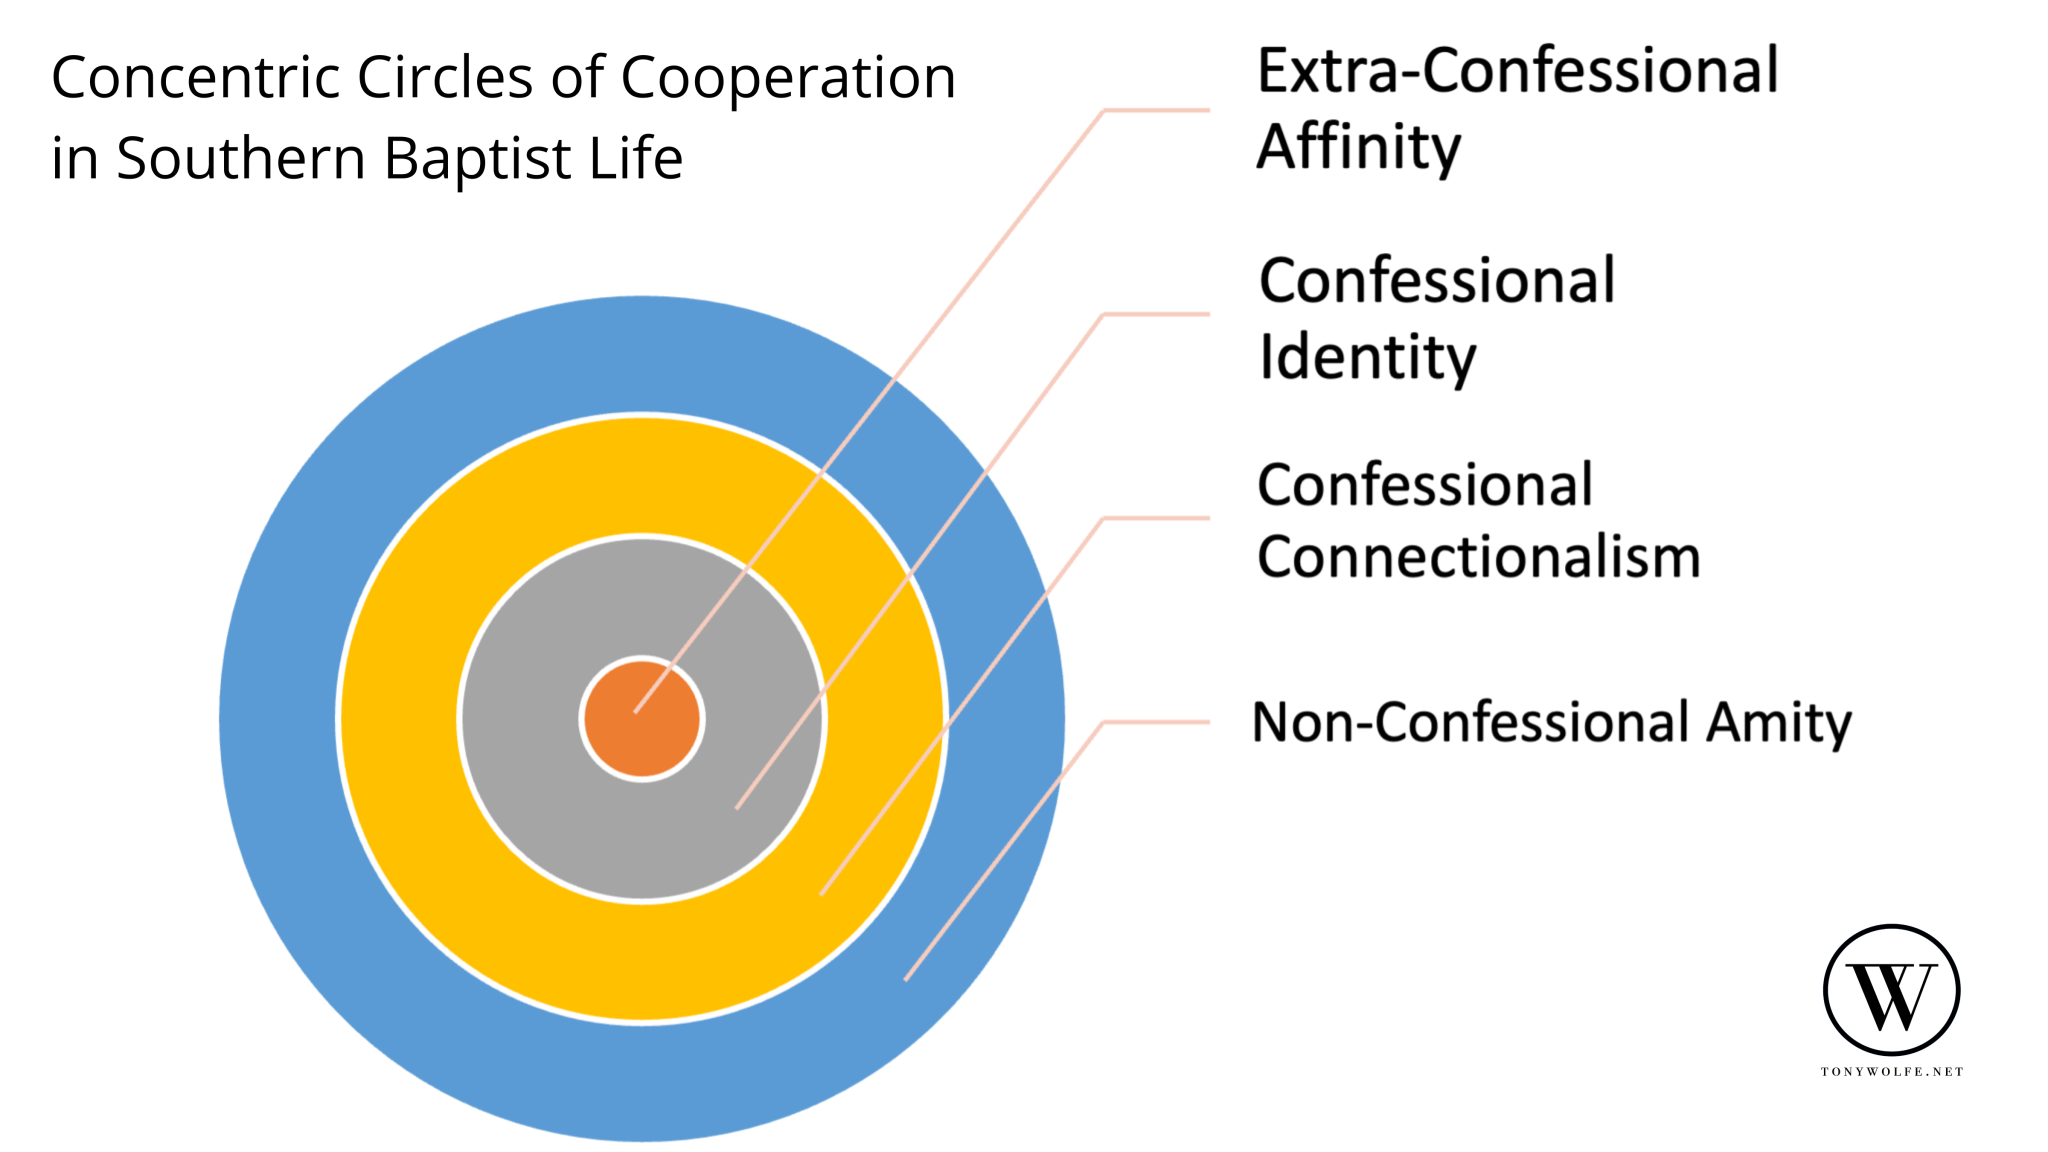 Círculos-concéntricos-de-cooperación-en-la-vida-bautista-del-sur-2